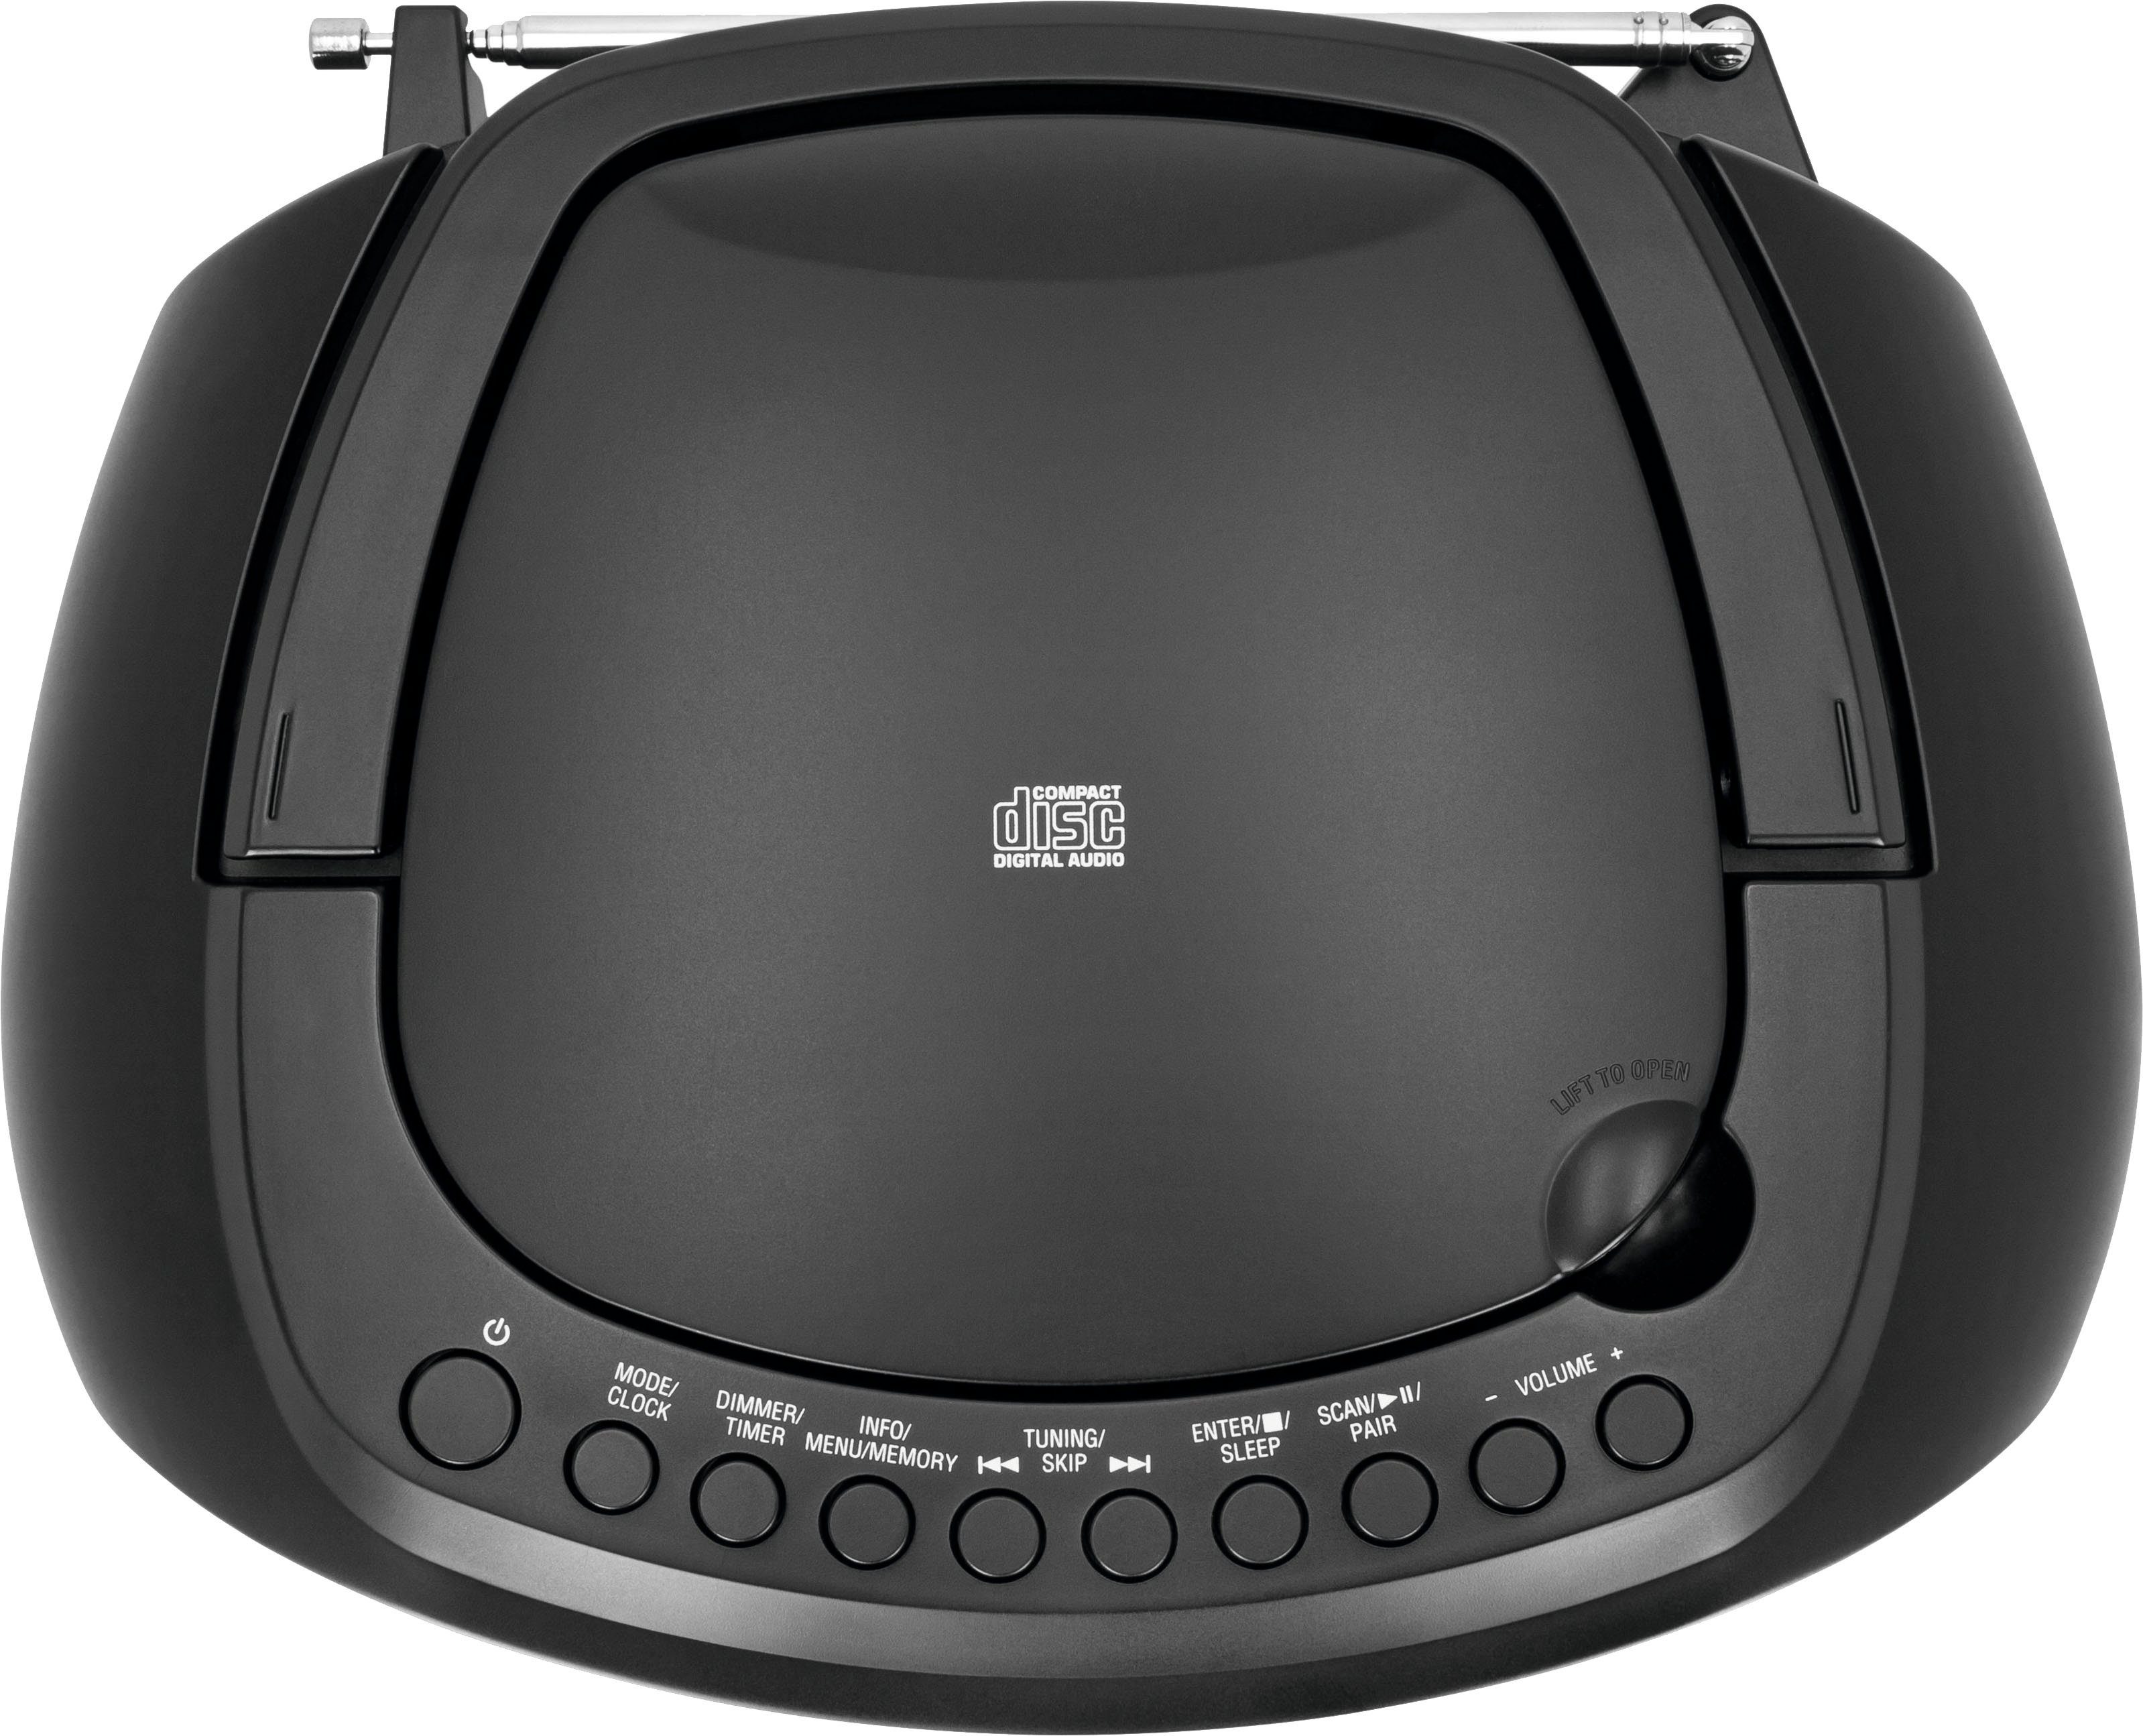 TechniSat mit schwarz (Digitalradio Digitradio DAB+, CD-Player, USB, Boombox Bluetooth, Stereo- 1990 UKW, (DAB), FM-Tuner, Batteriebetrieb möglich)